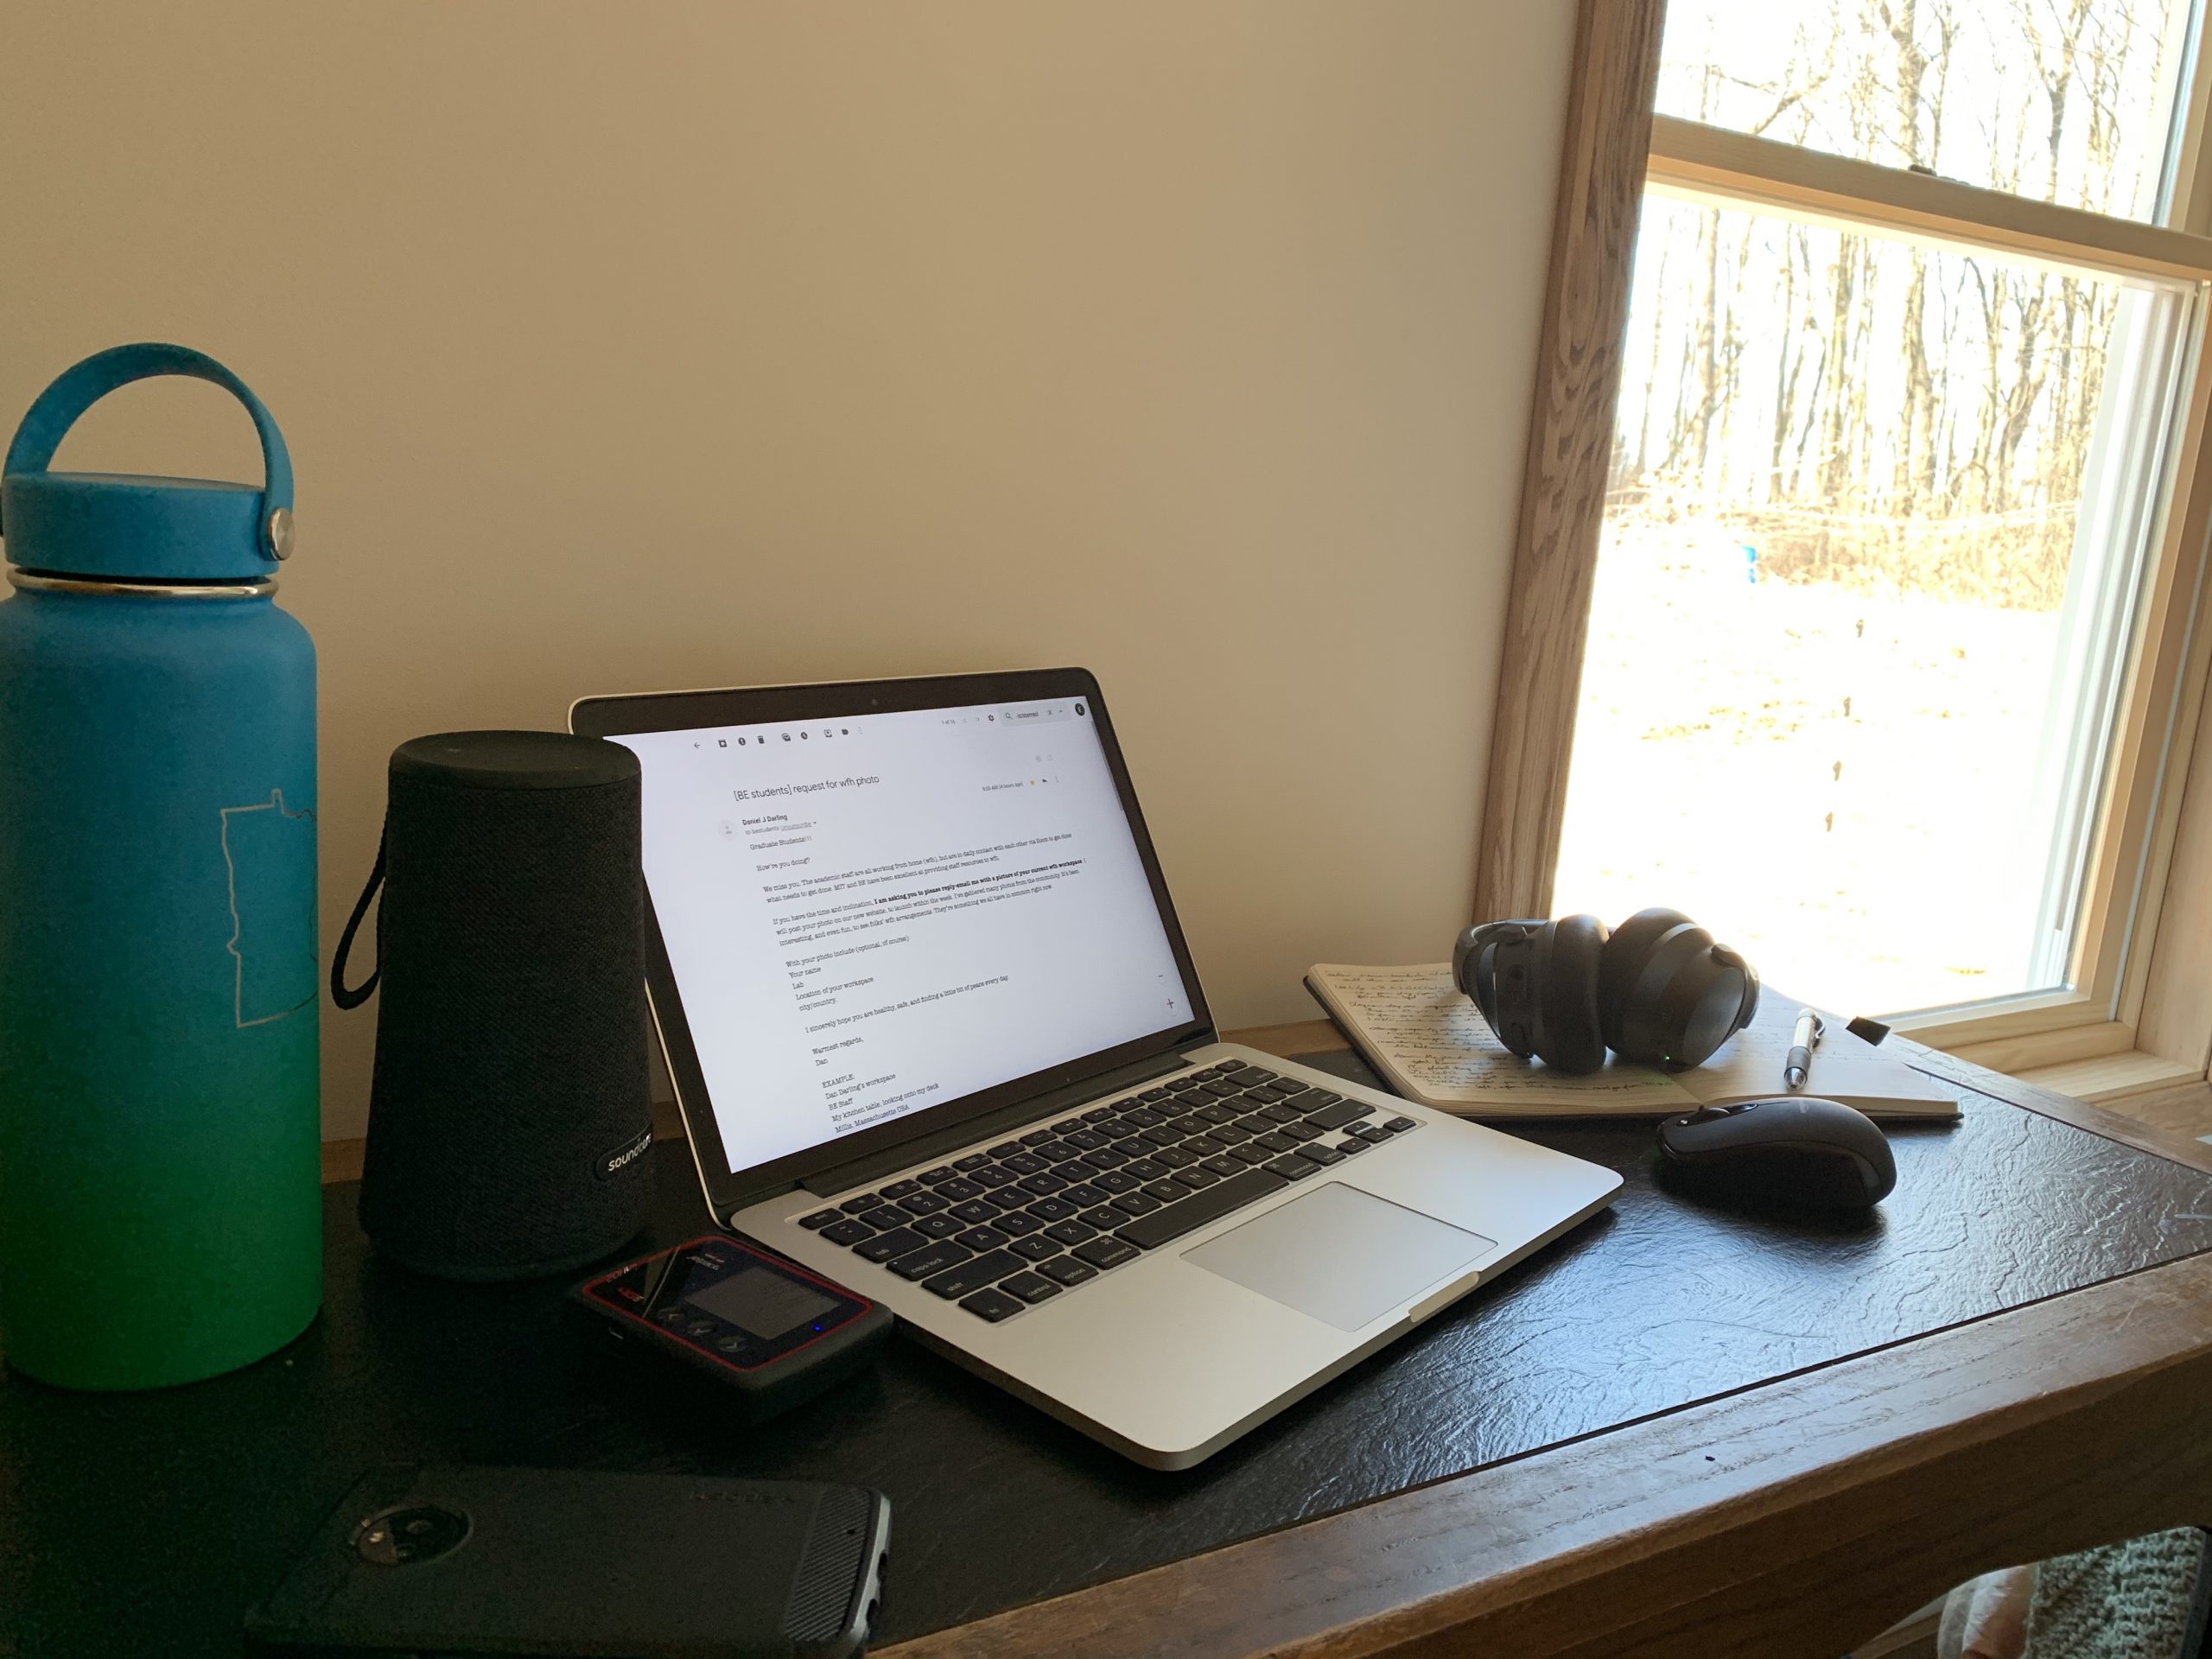 Desk, laptop, bare wall, window